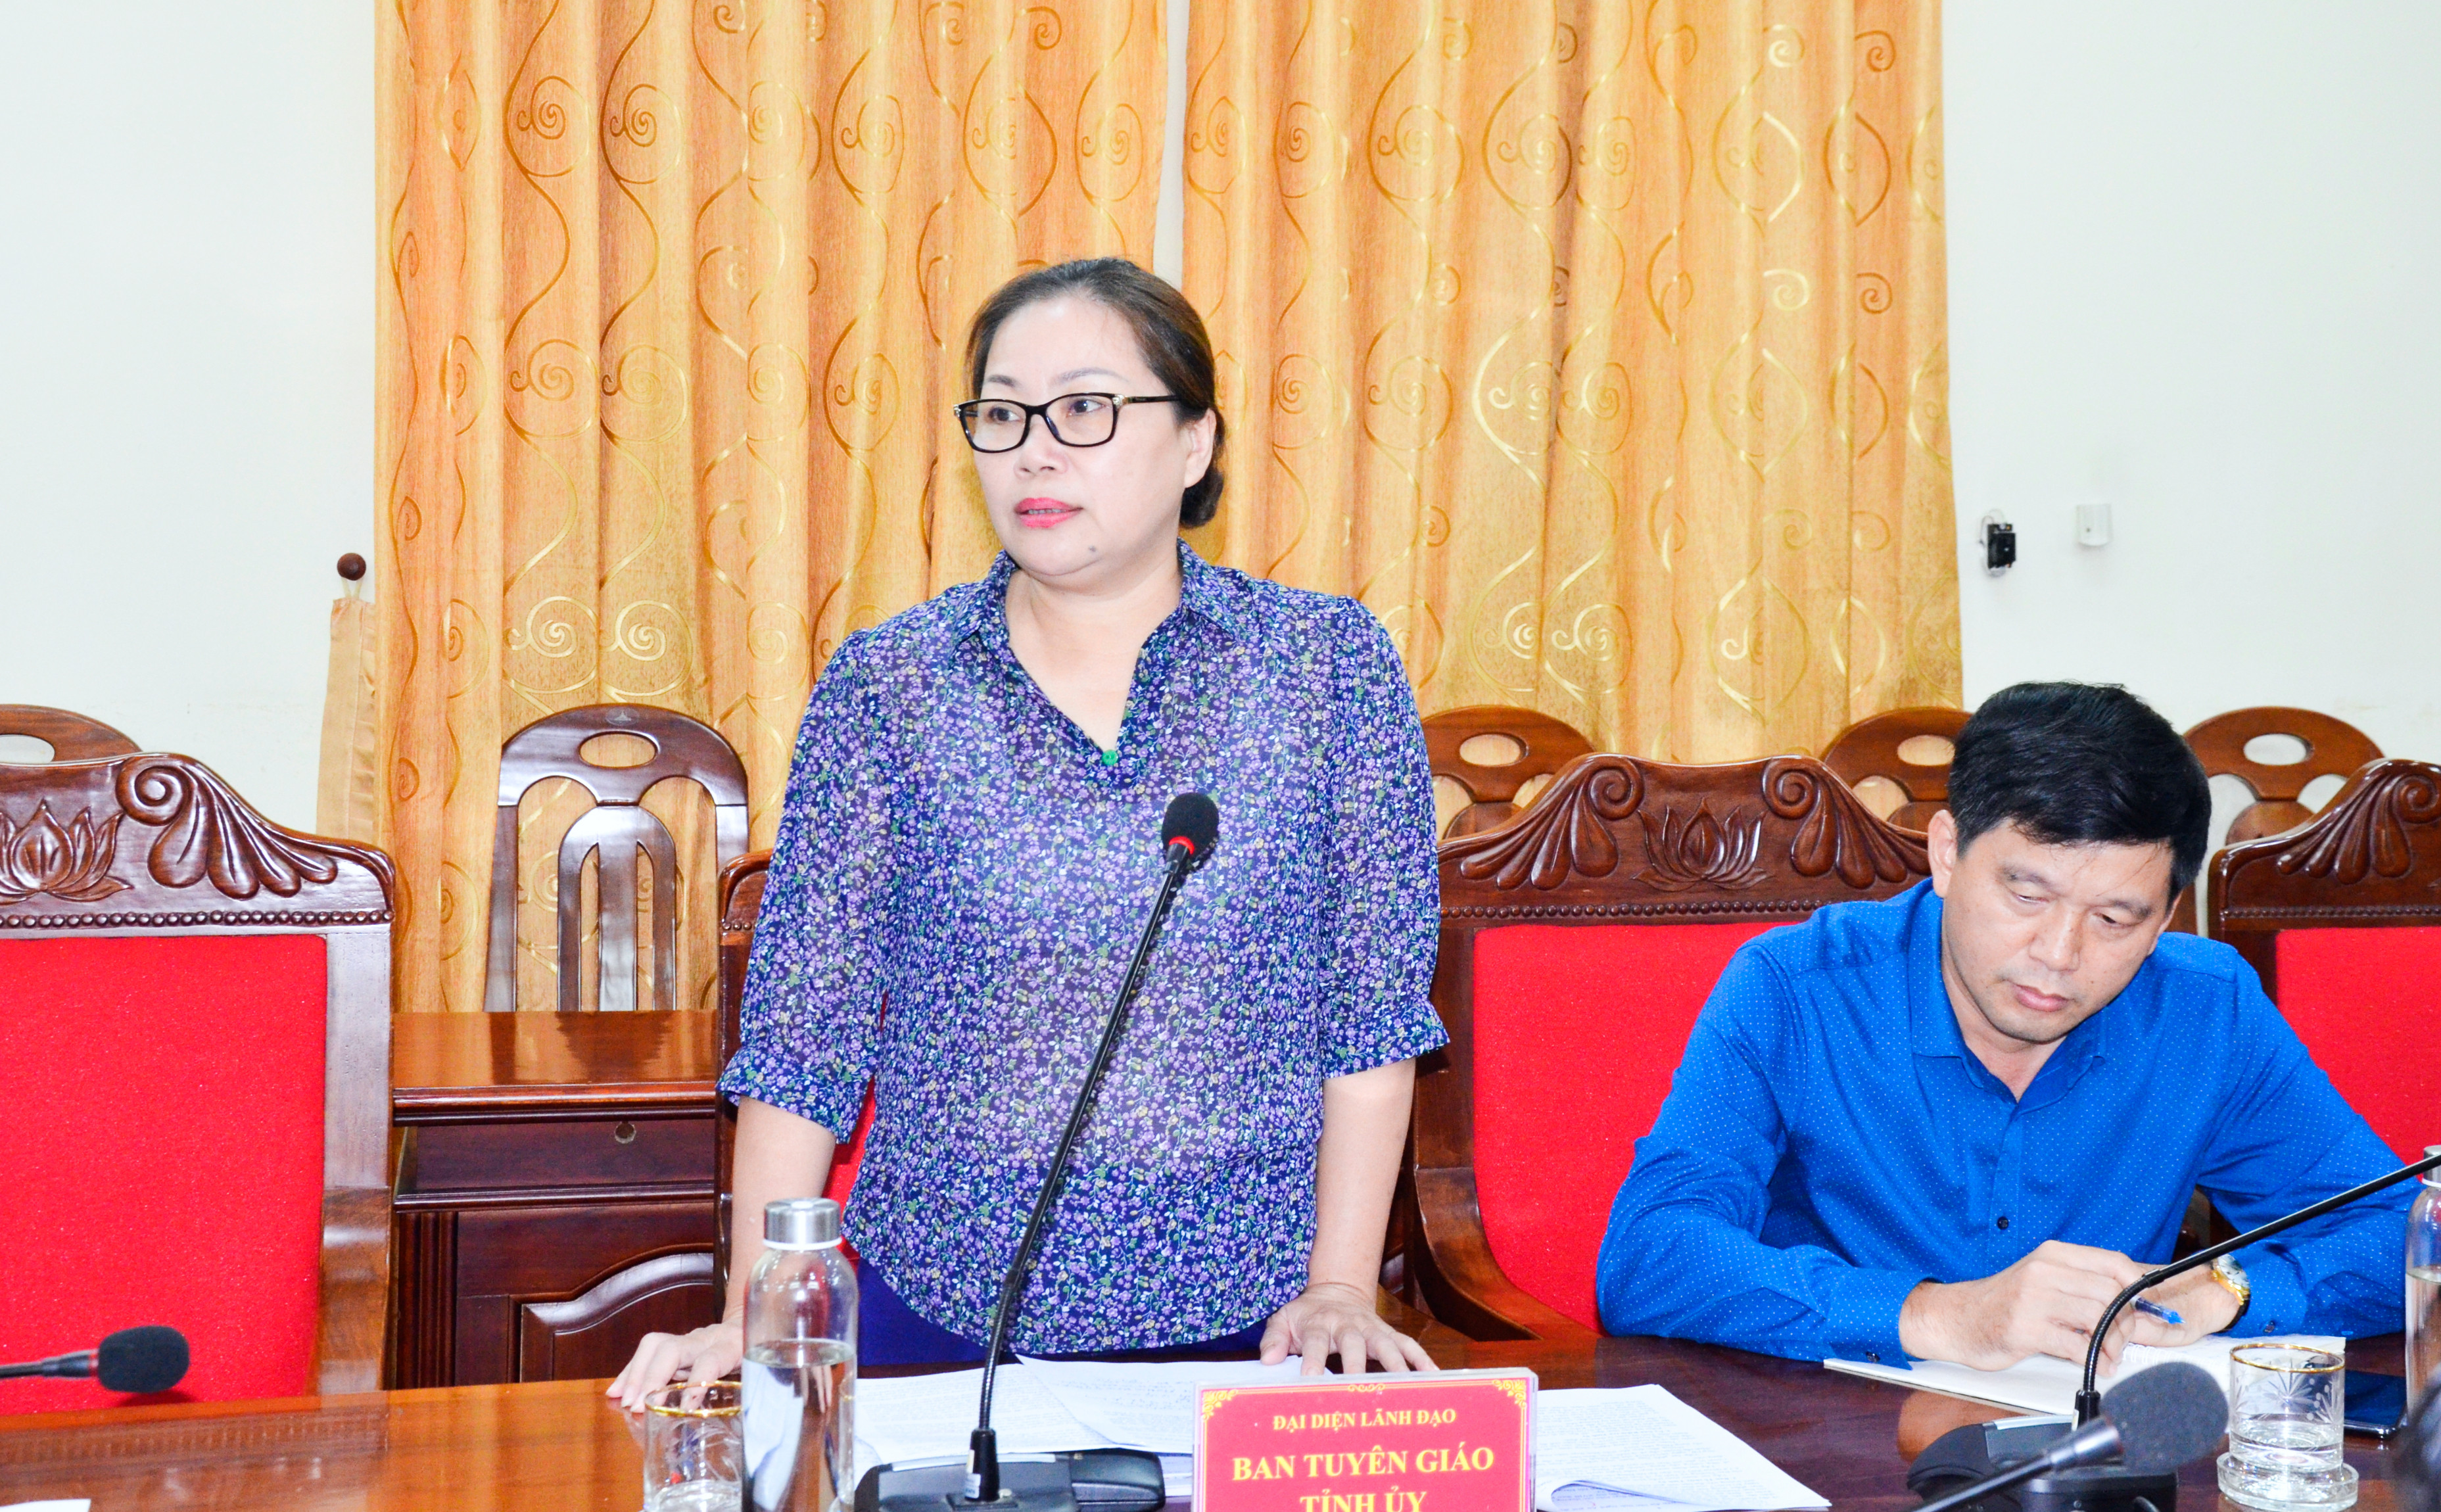 Đồng chí Nguyễn Thị Thu Hường - Ủy viên Ban Thường vụ, Trưởng Ban Tuyên giáo phát biểu về chuẩn bị kế hoạch tuyên truyền đại hội Đảng các cấp. Ảnh Thanh Lê